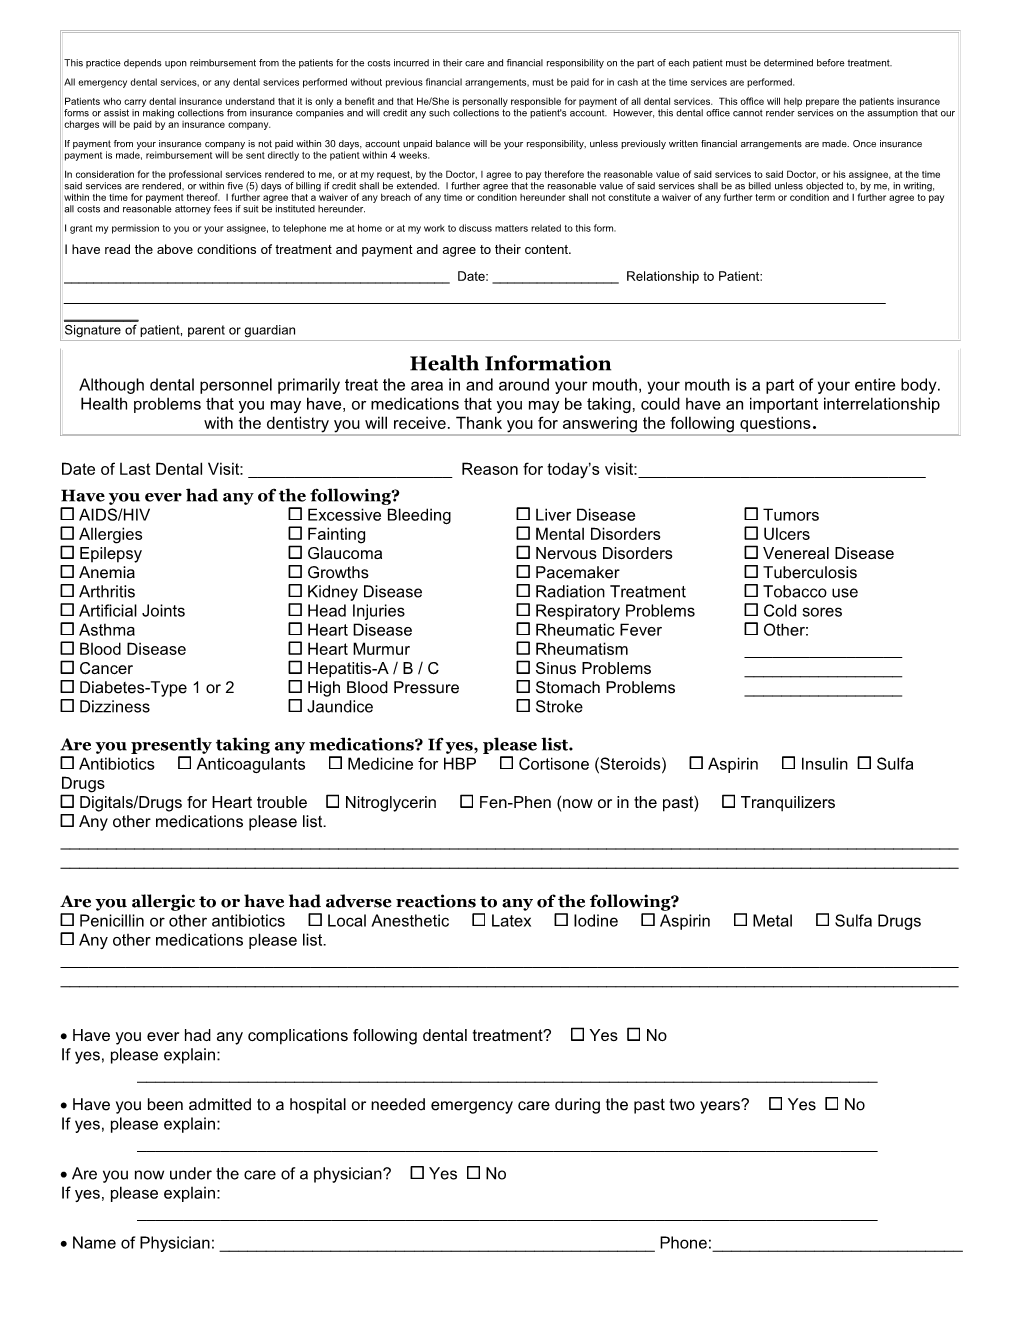 Sample New Patient Questionnaire s2